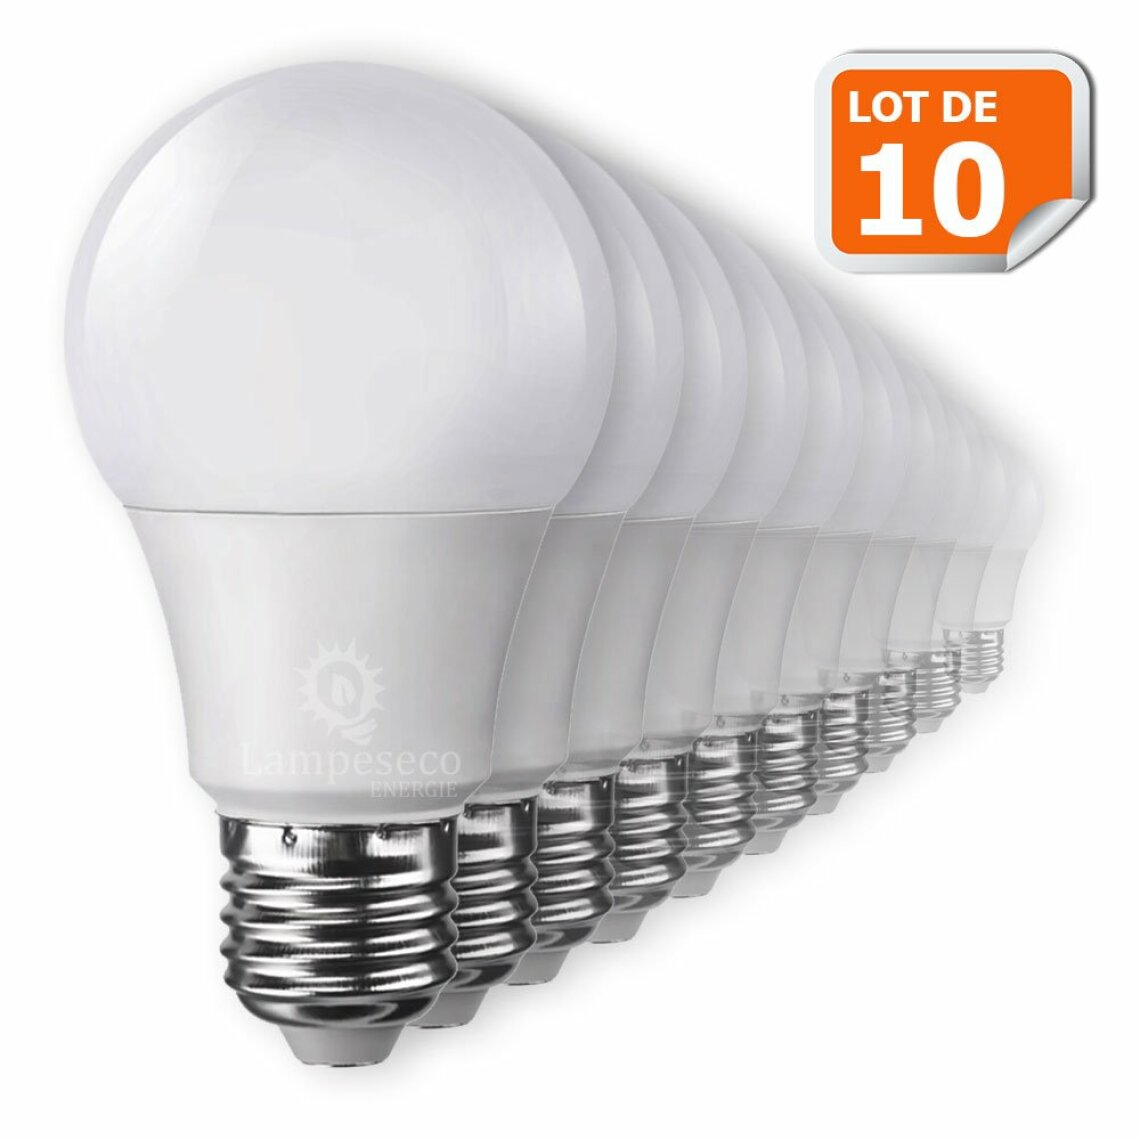 Lampesecoenergie - Lot de 10 Ampoules LED V-TAC Culot E27 7W (éq. 45W) 470lm angle 200° lumière blanc neutre - Ampoules LED